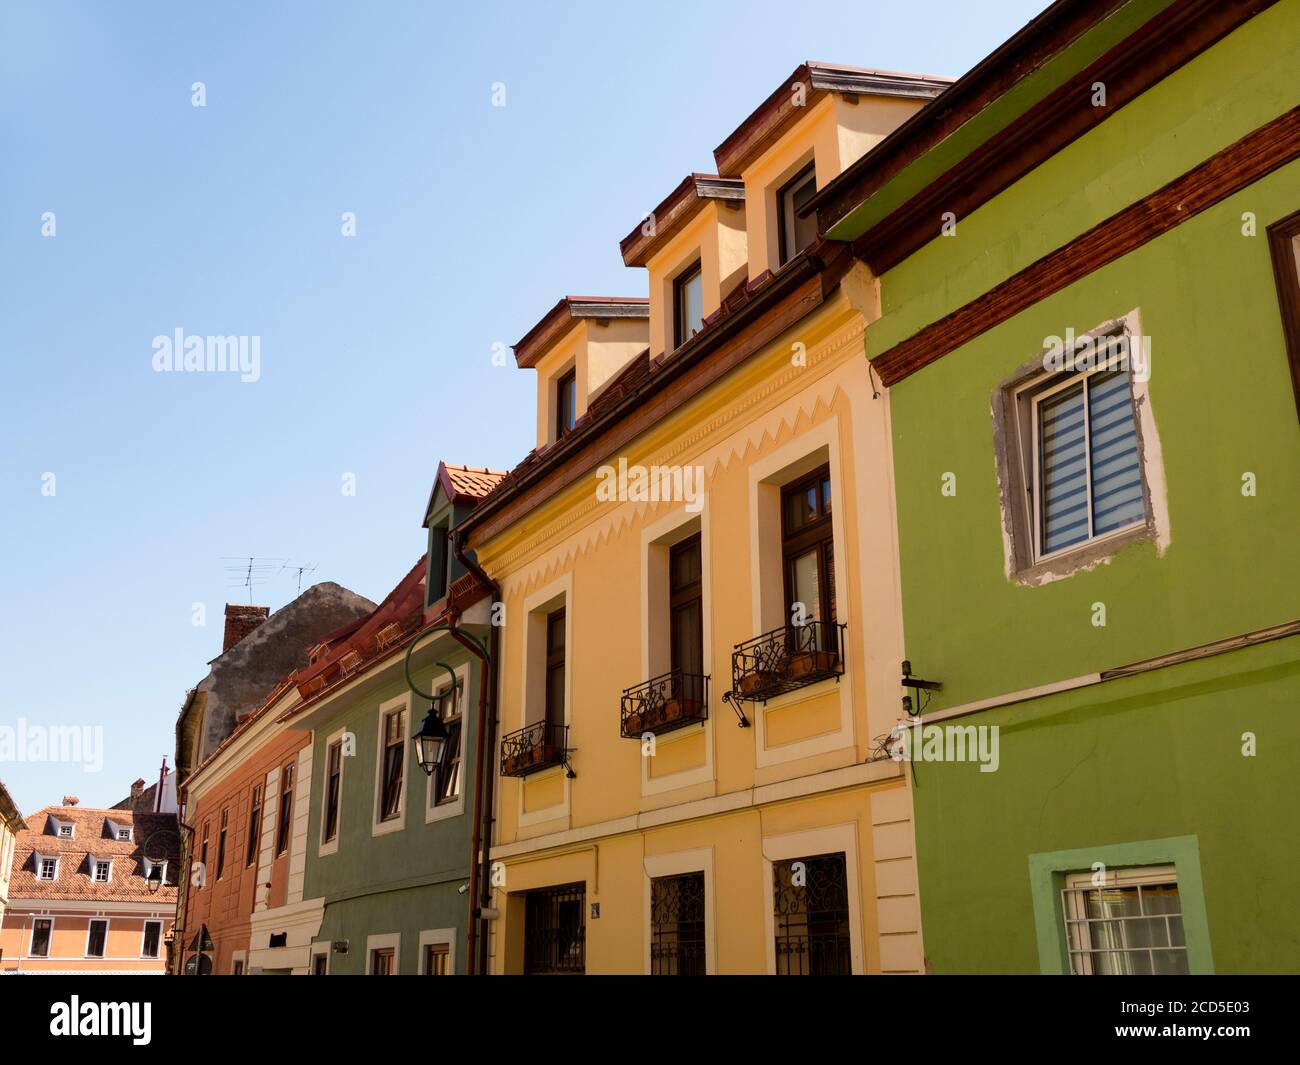 Row of townhouses, Brasov, Transylvania, Romania Stock Photo